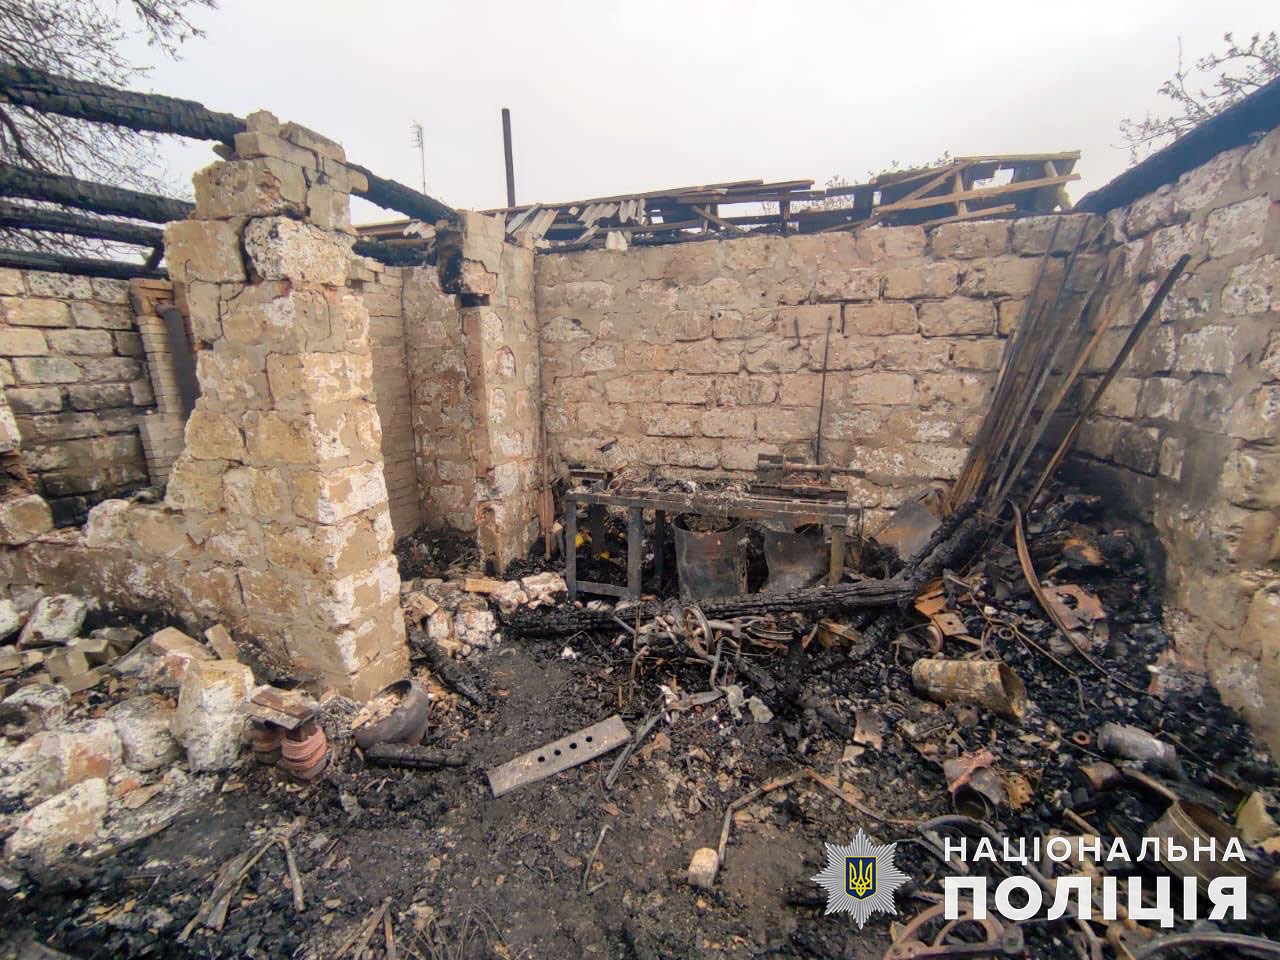 8 травня окупанти гатили по населених пунктах області з ЗРК “С-300”, реактивних систем залпового вогню “Град” та артилерії